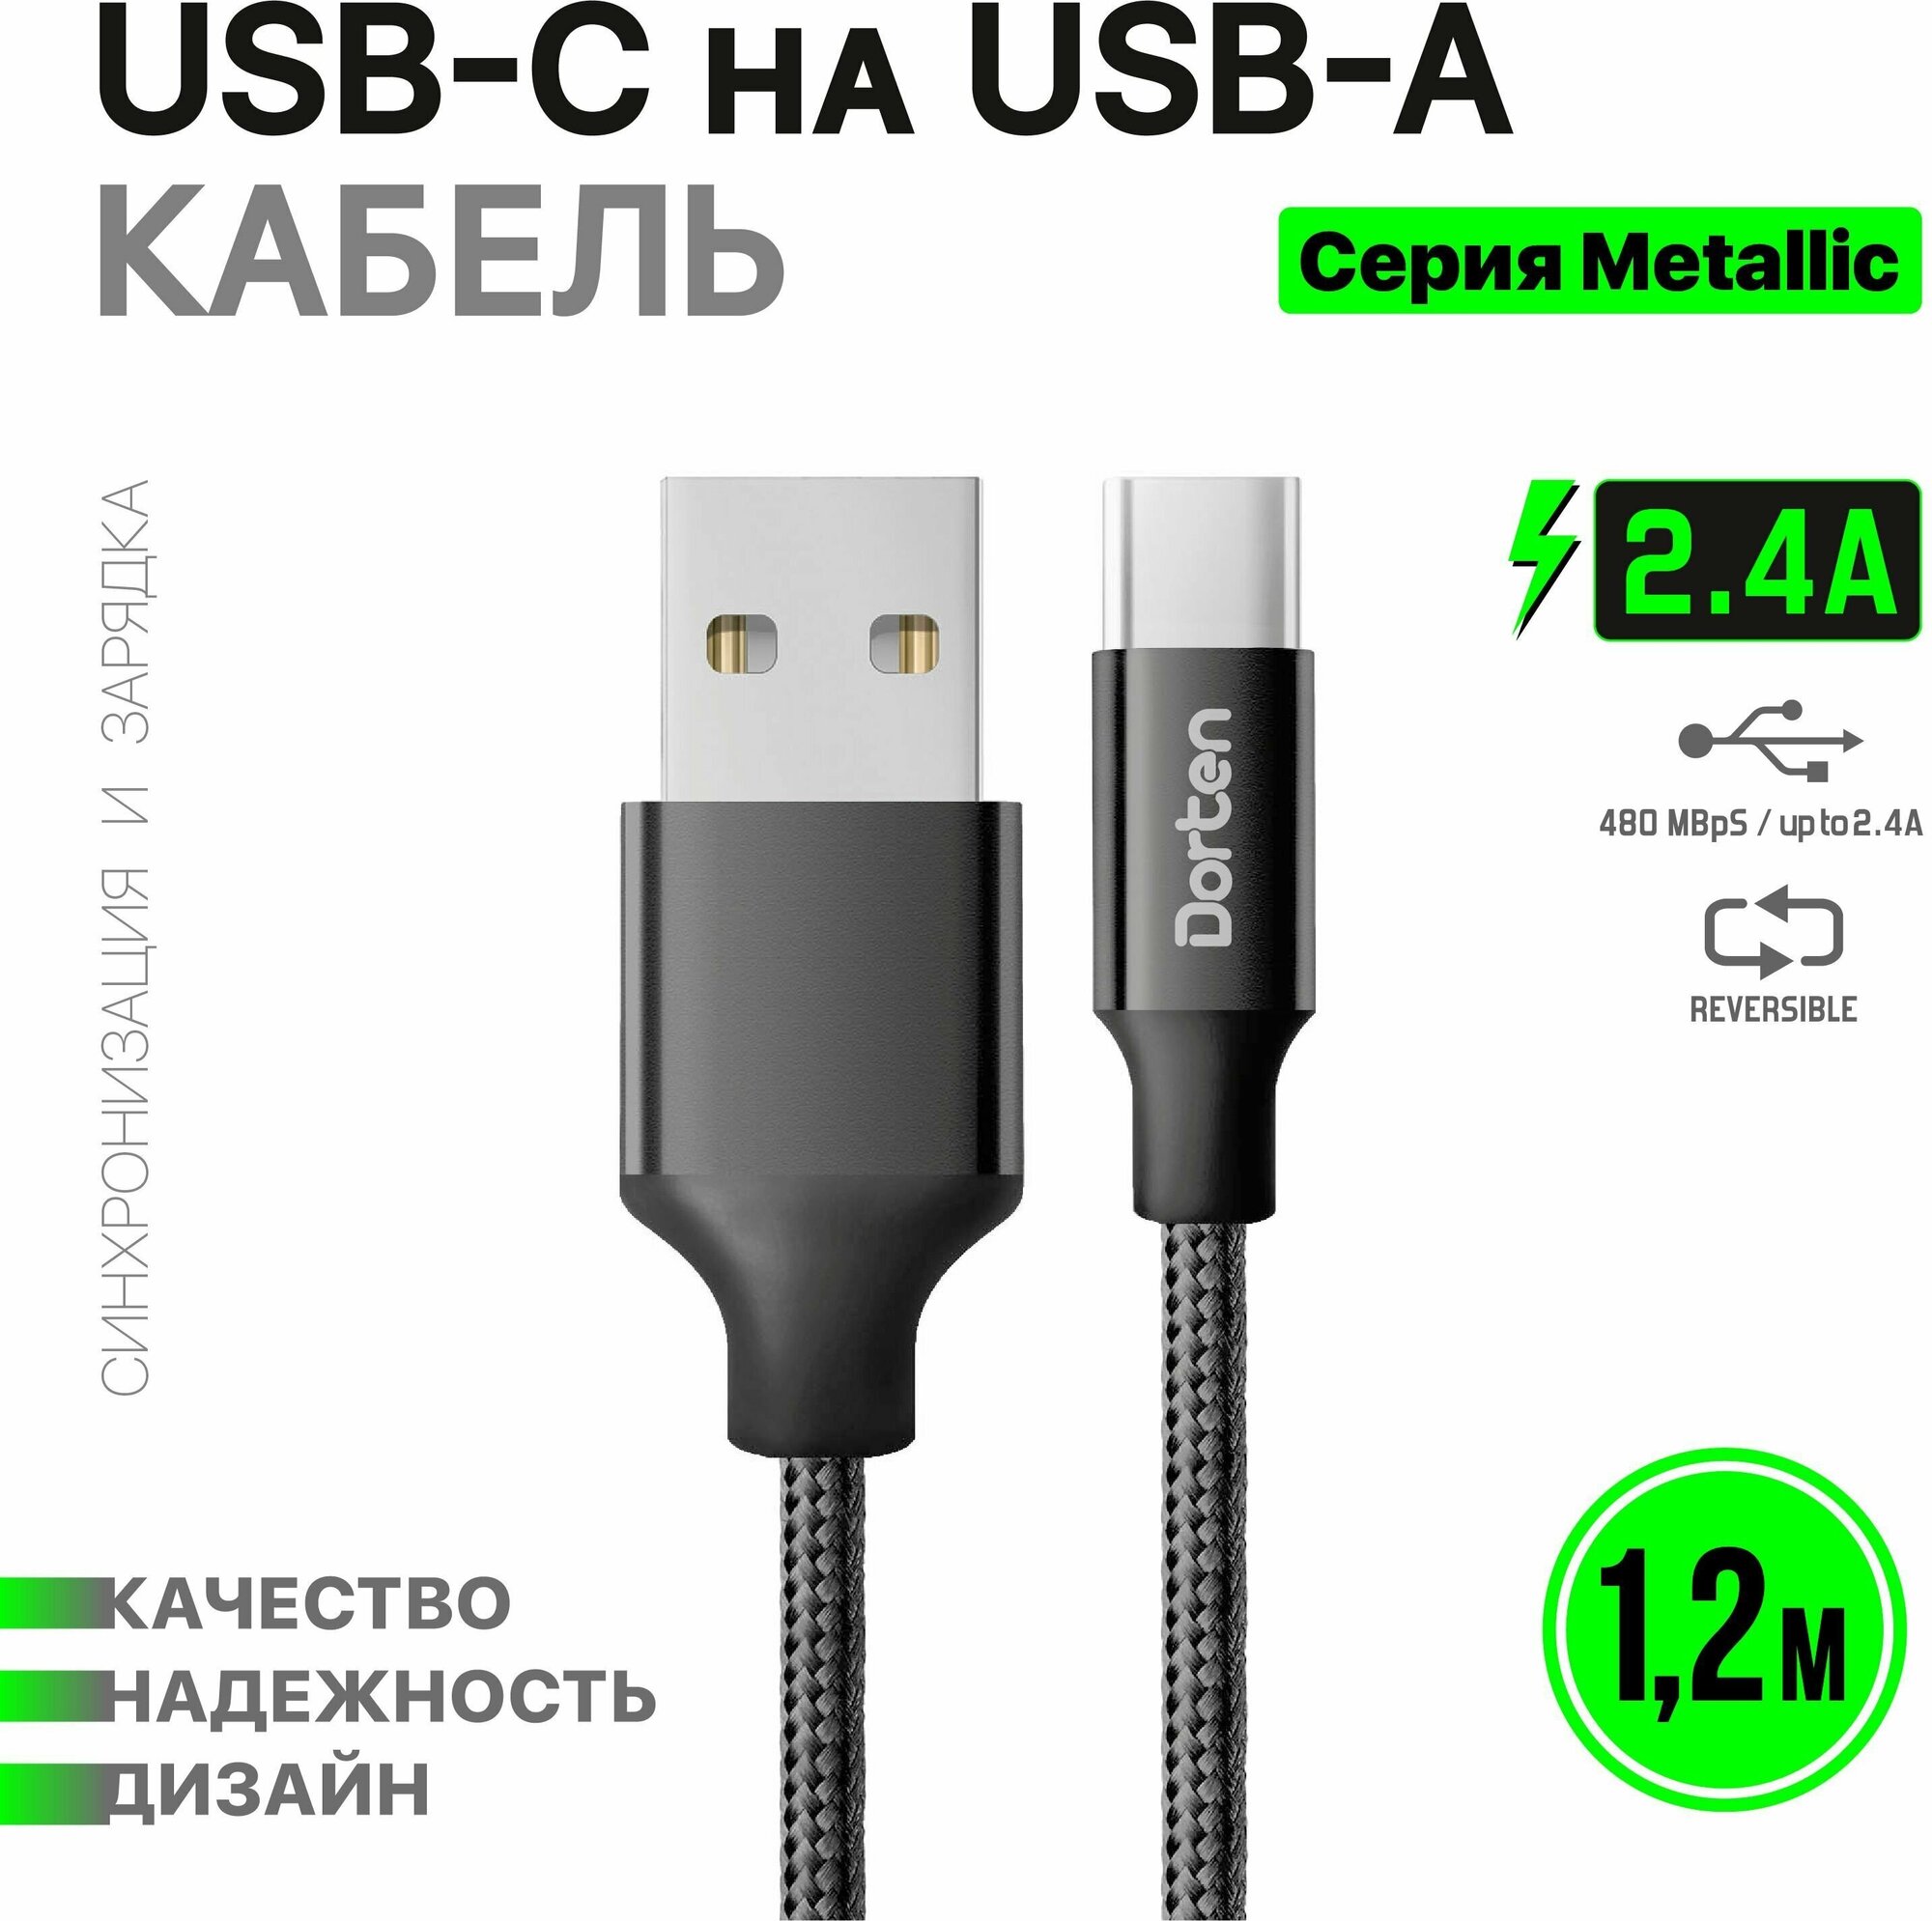 Кабель USB-C для зарядки телефона 1,2 метра: Metallic series провод юсб 1,2м - Черный